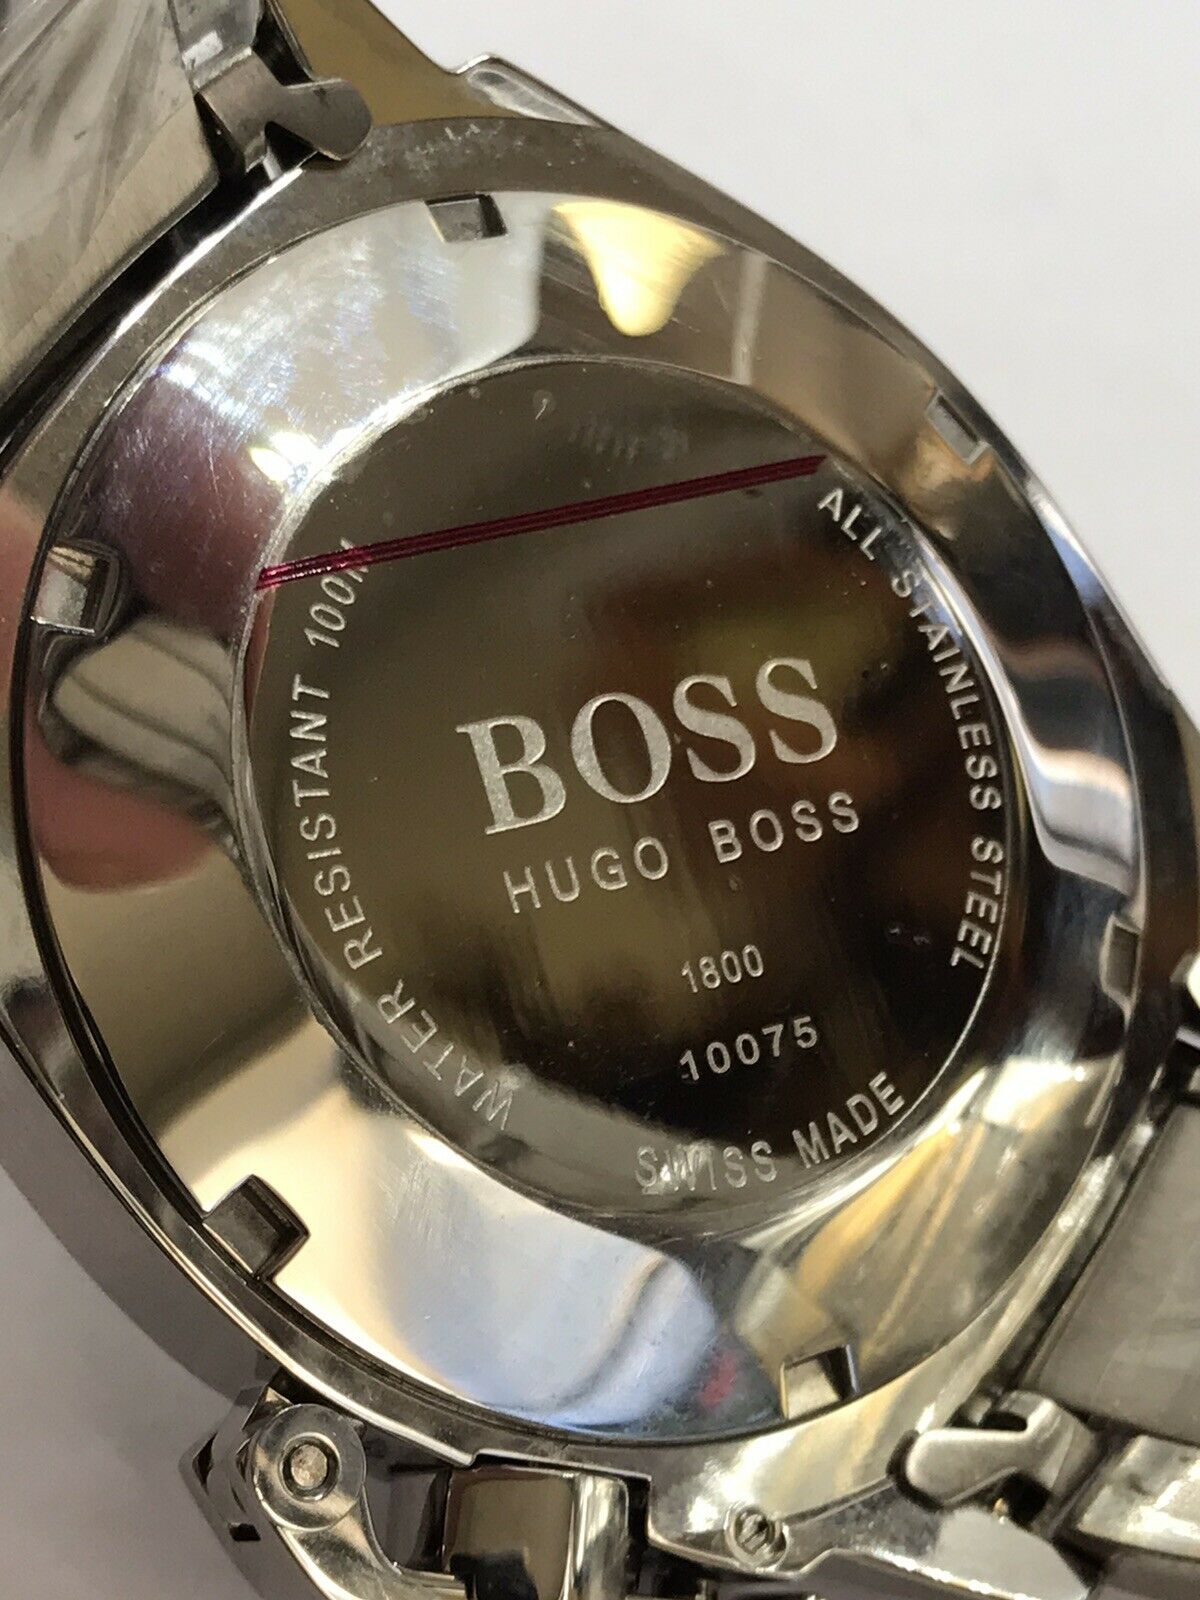 Boss Hugo Boss Watch Hot Sale | medialit.org